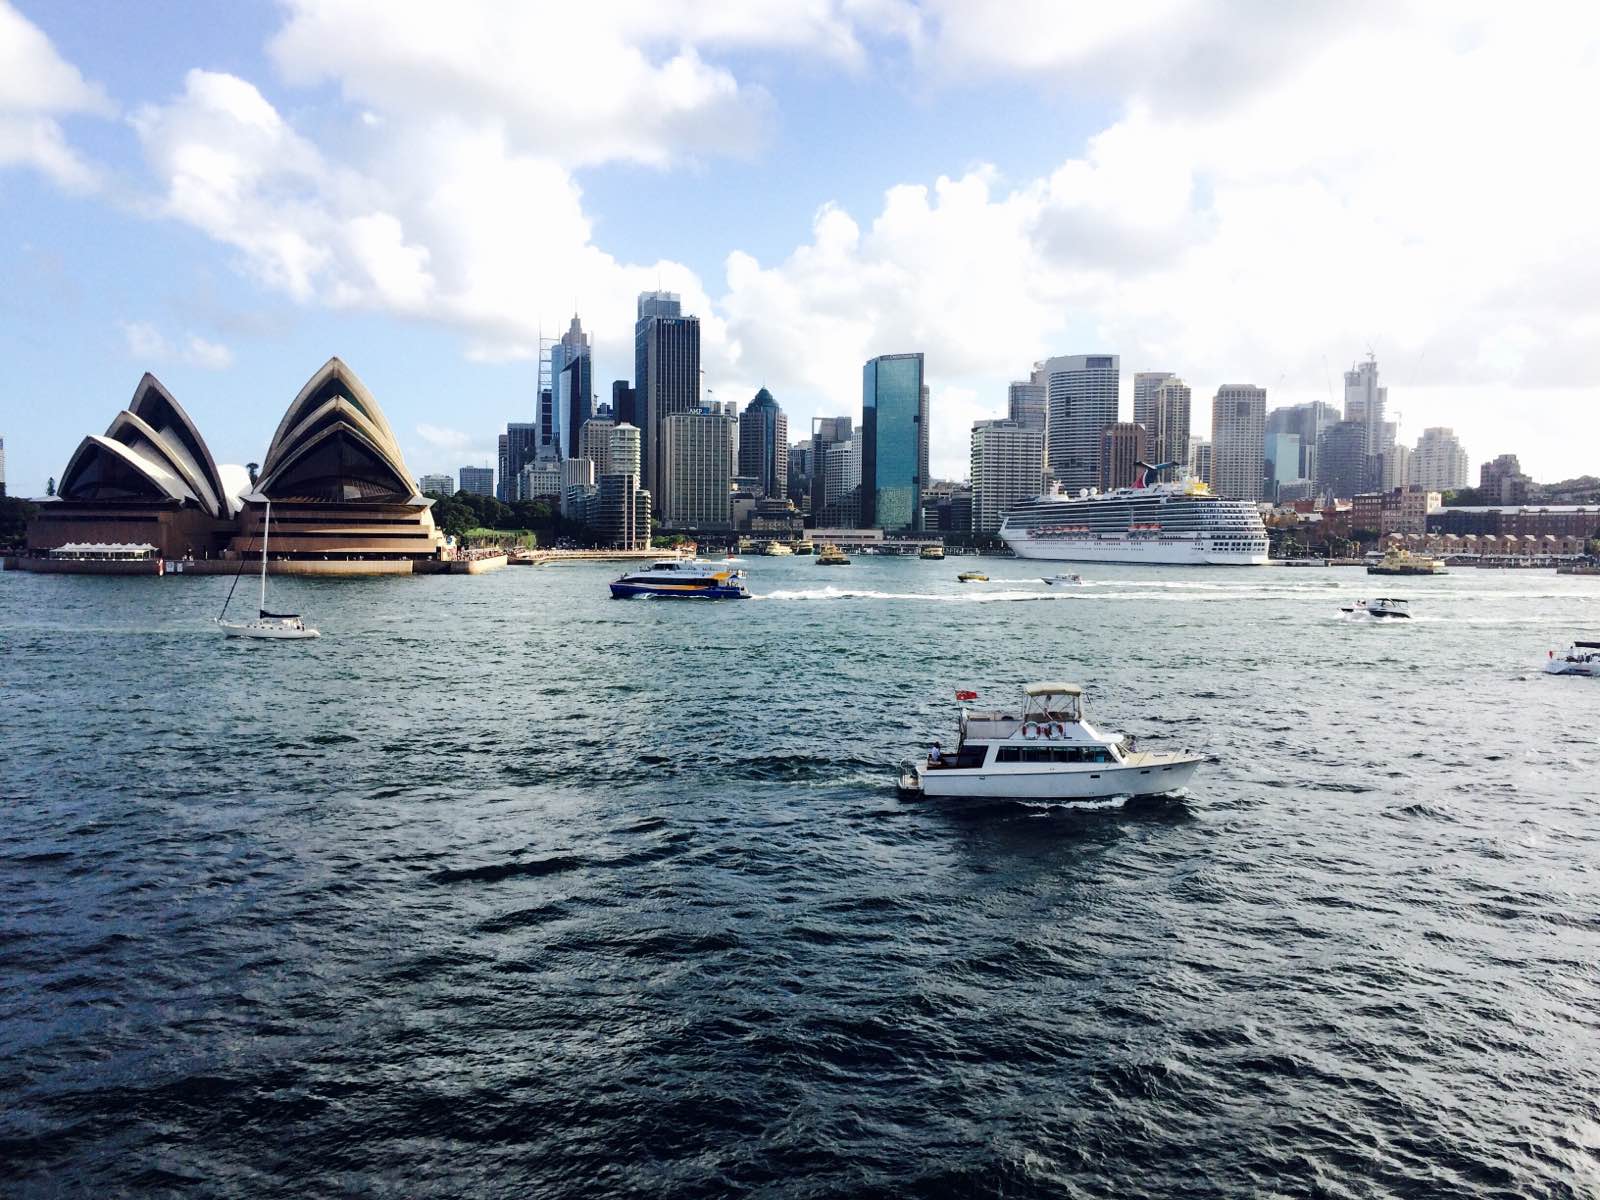 邦迪海滩，悉尼歌剧院，港湾大桥，悉尼港，蓝山，悉尼大学，悉尼奥运会主场